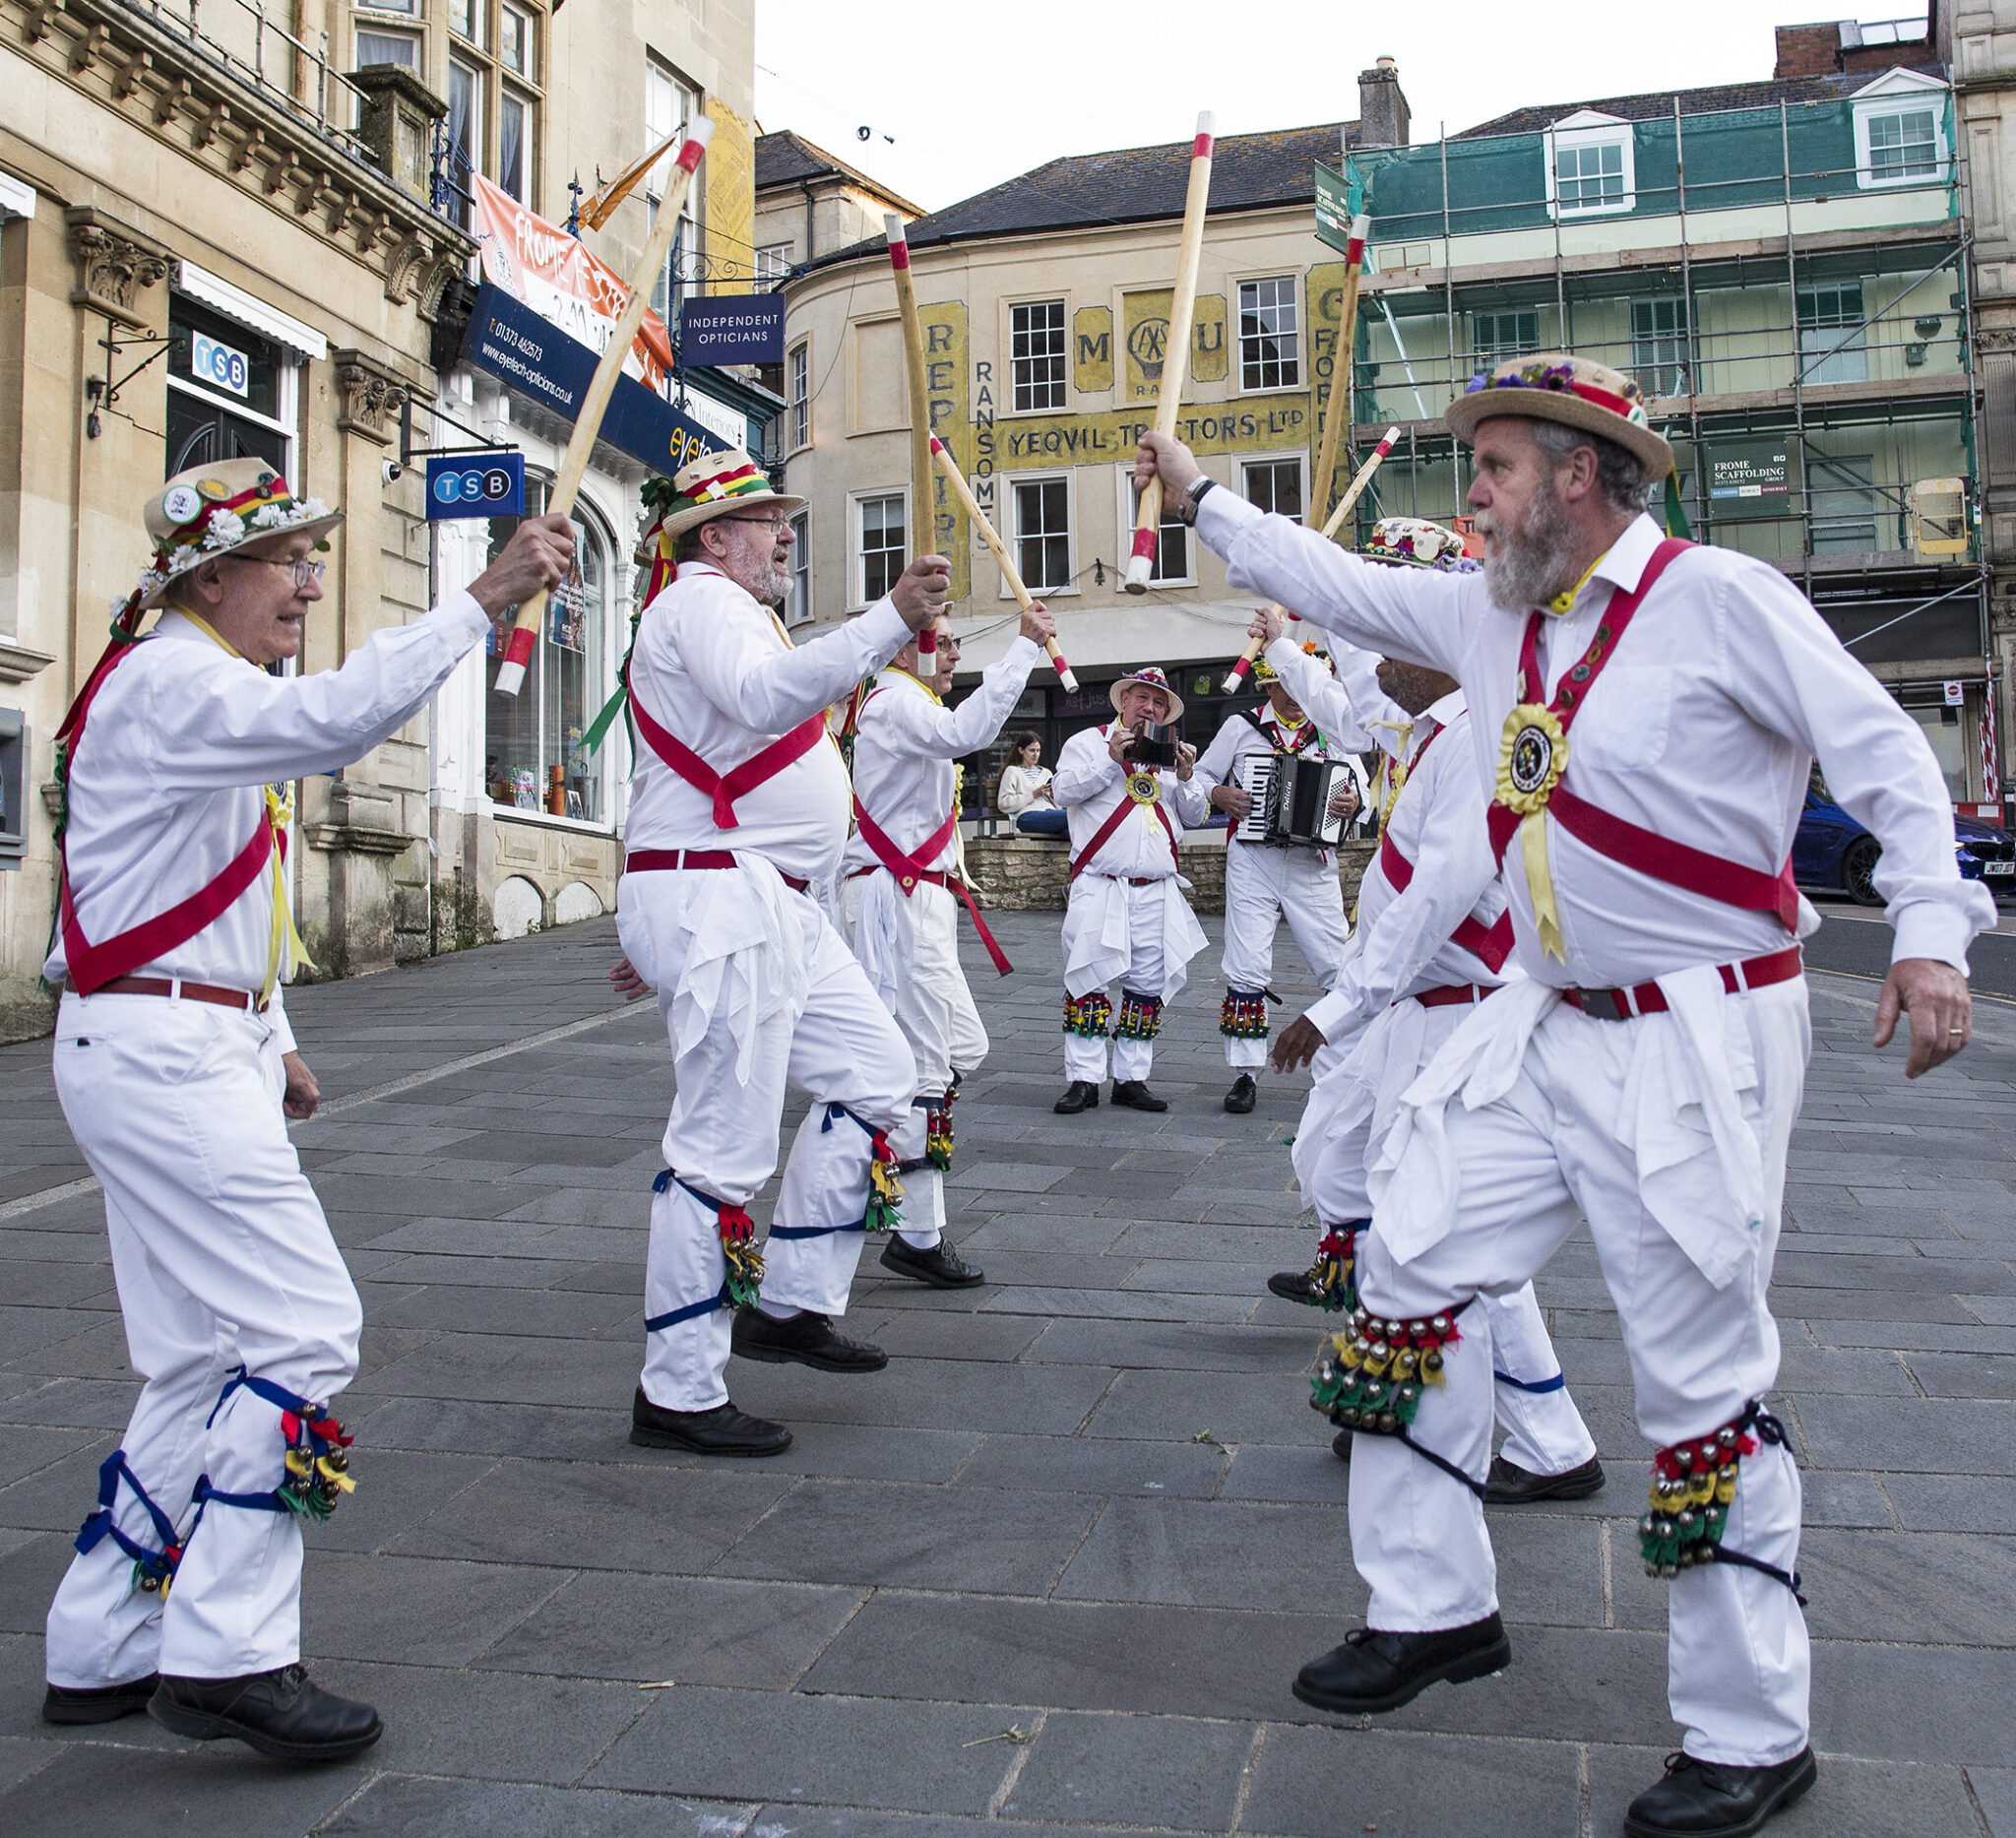 7) Morris Dancing:
 E’ una danza tradizionale che viene svolta da uomini che indossano pantaloni con campanelle, bastoni, spa